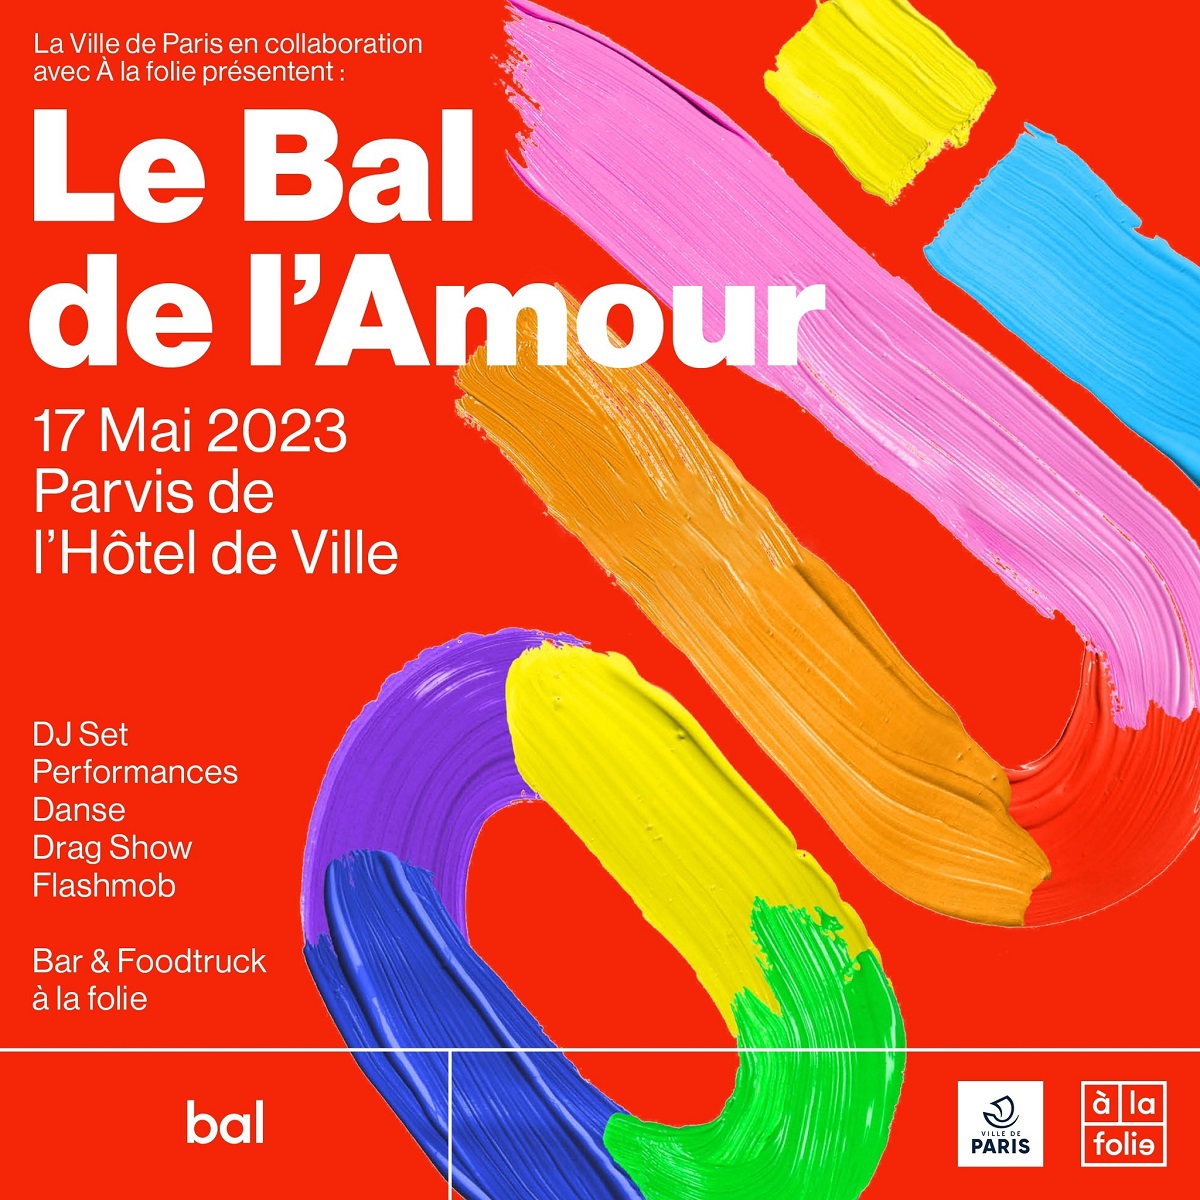 Le Bal de l'Amour, 17 mai 2023 sur le parvis de l'Hôtel de Ville